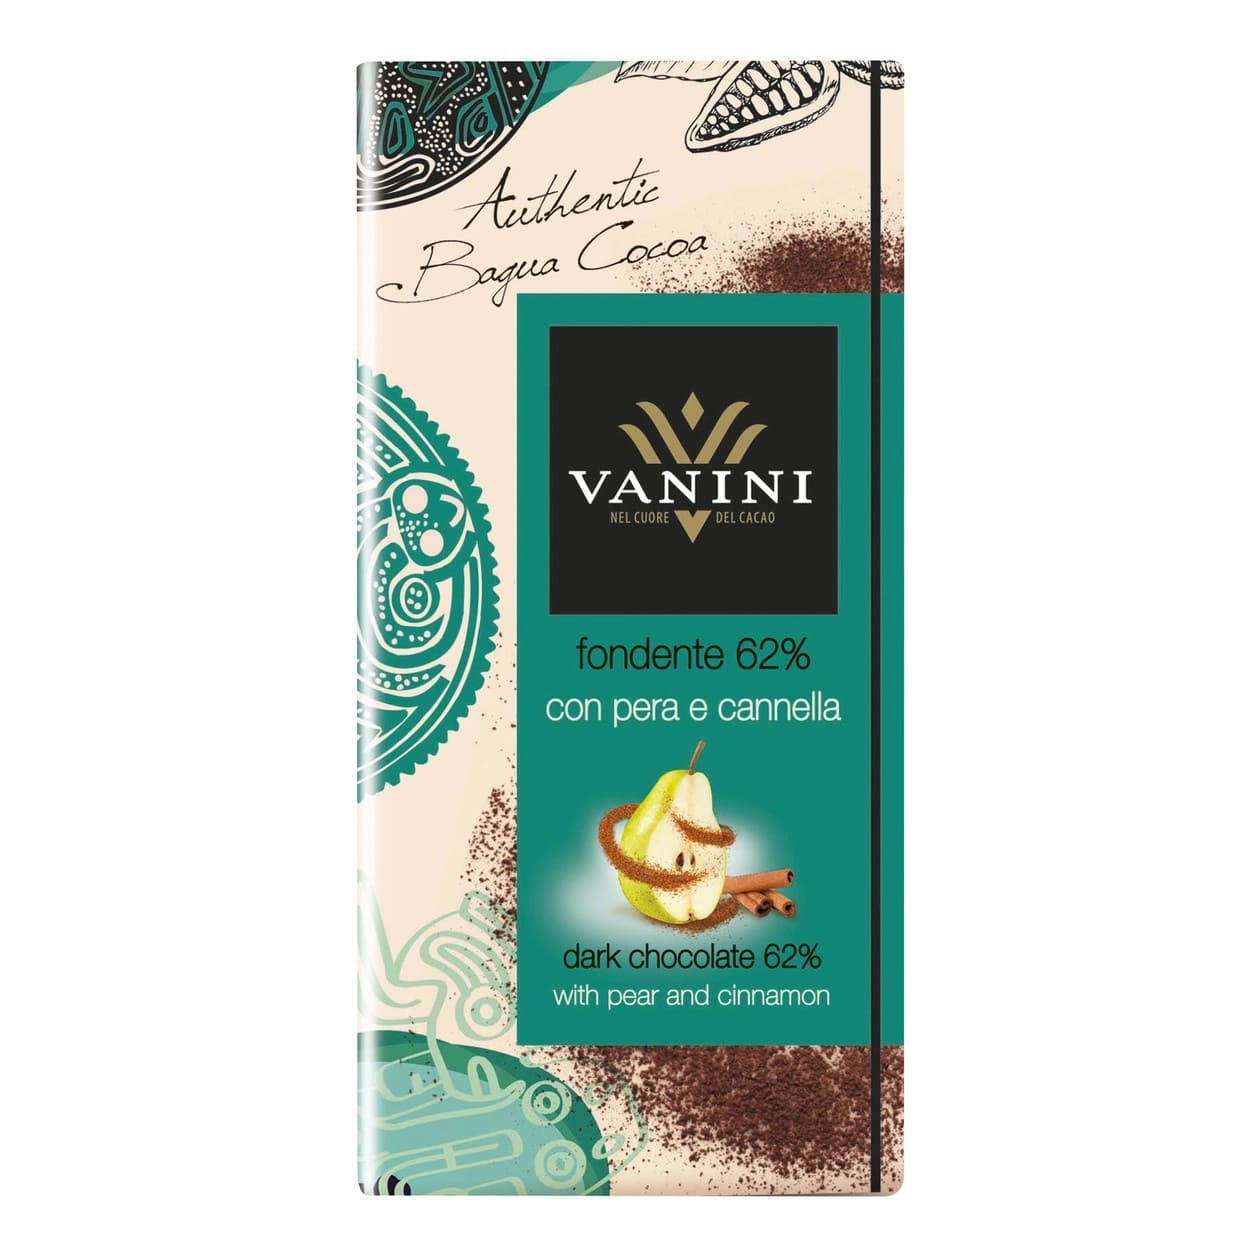 Vanini 62% Dark Chocolate With Pear And Cinnamon 100g